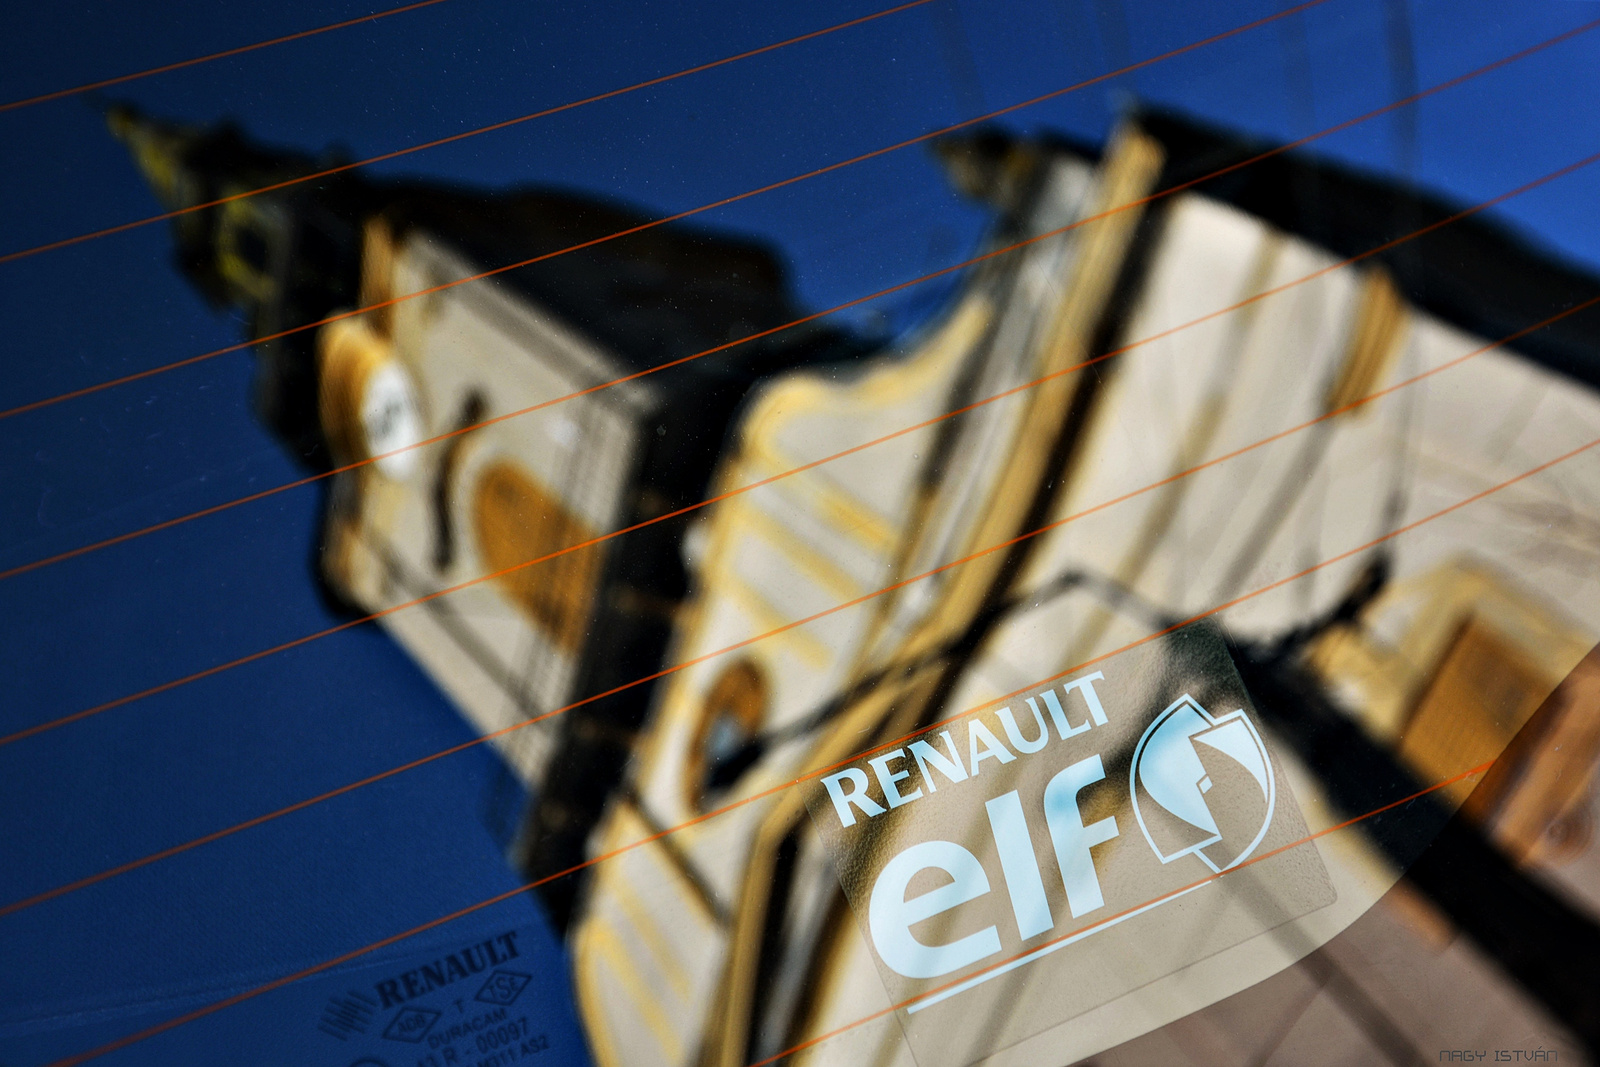 Renault/ELF